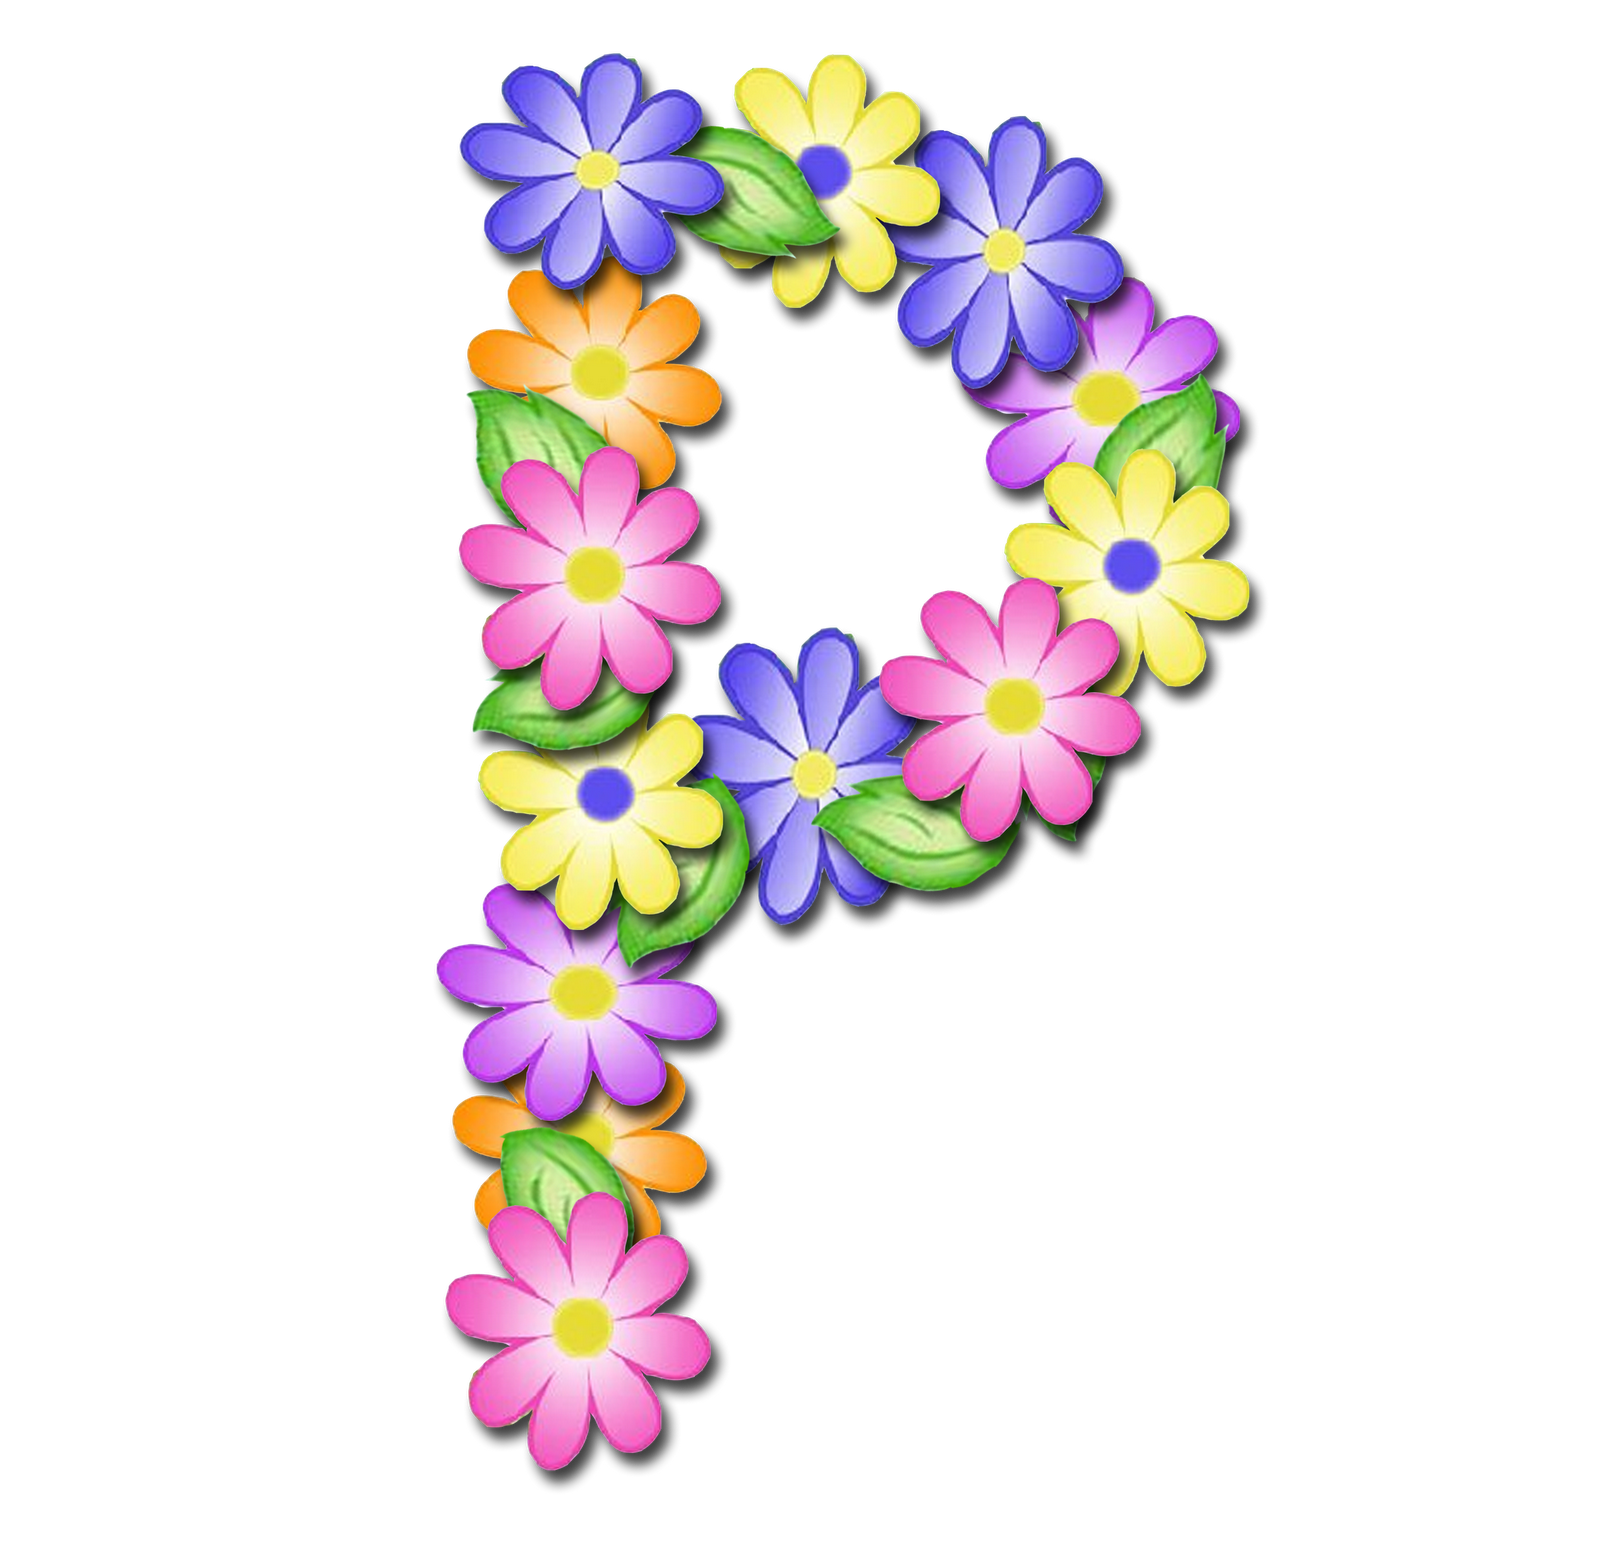 صور الحروف الإنجليزية بأجمل الزهور والورود بخلفية شفافة بنج png وجودة عالية للمصممين :: إبحث عن حروف إسمك بالإنجليزية - صفحة 2 P_1699r88ux1